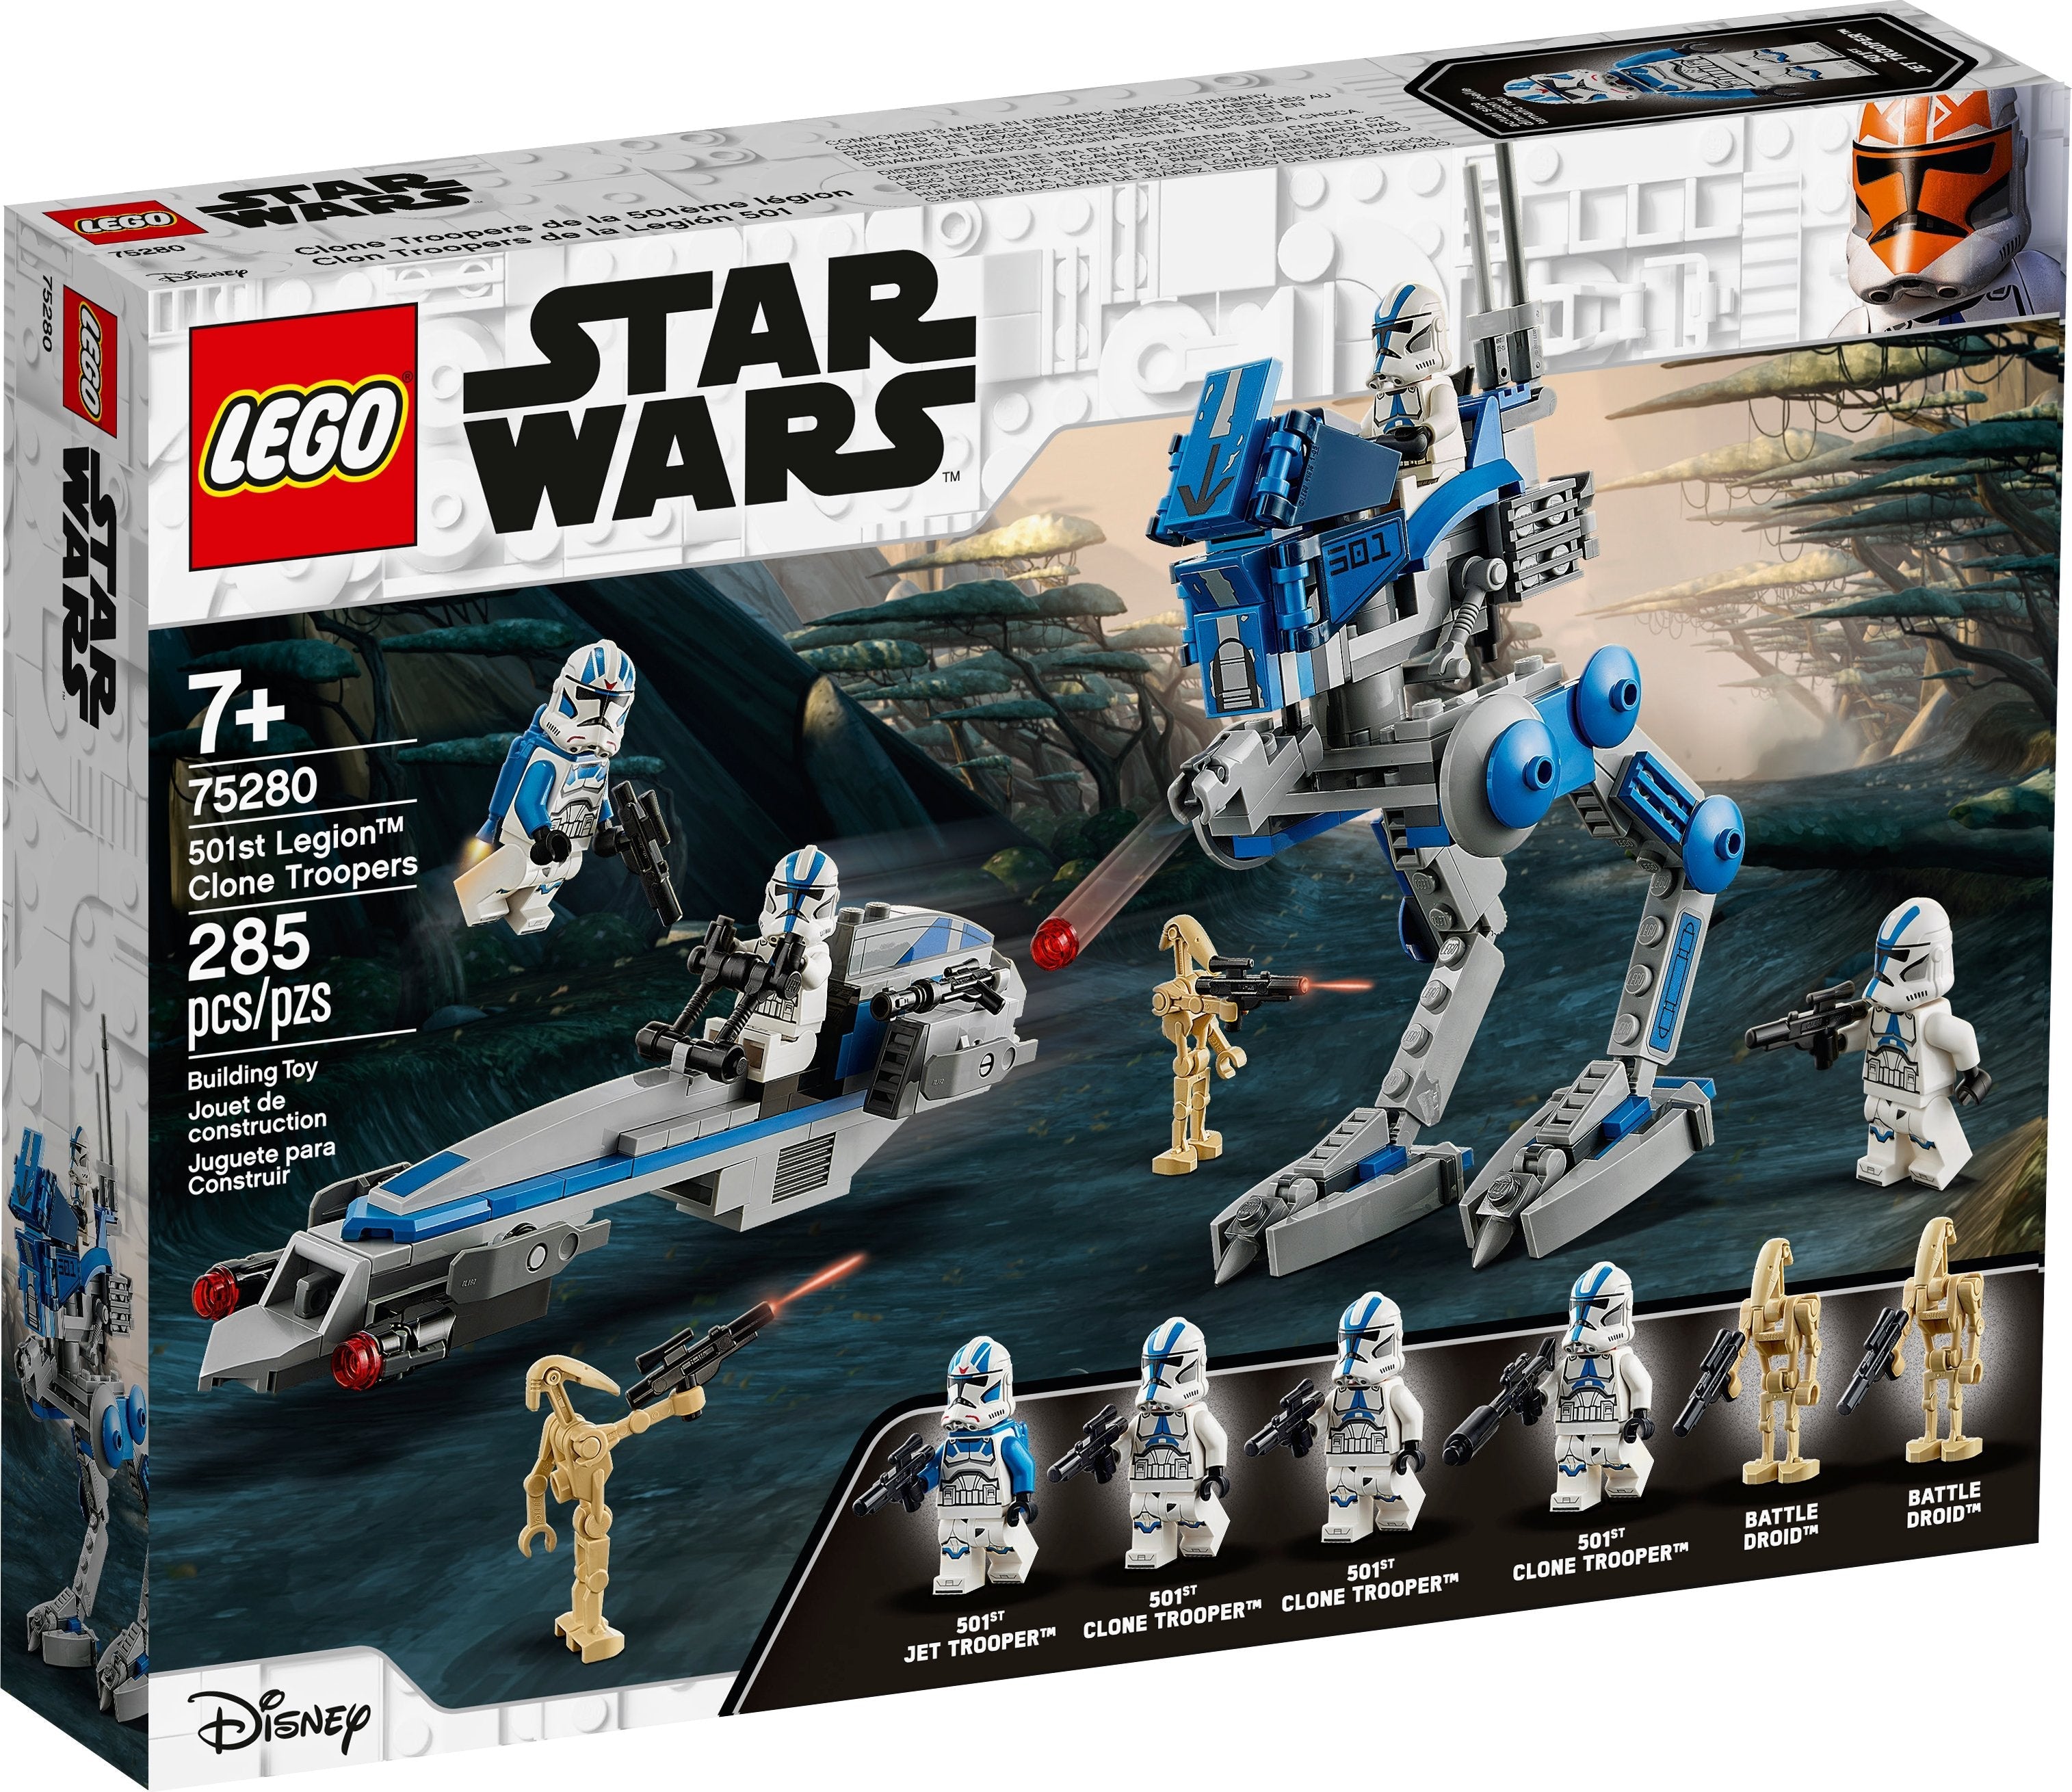 LEGO Star Wars Clone Troopers der 501. Legion (75280) - im GOLDSTIEN.SHOP verfügbar mit Gratisversand ab Schweizer Lager! (5702016617245)